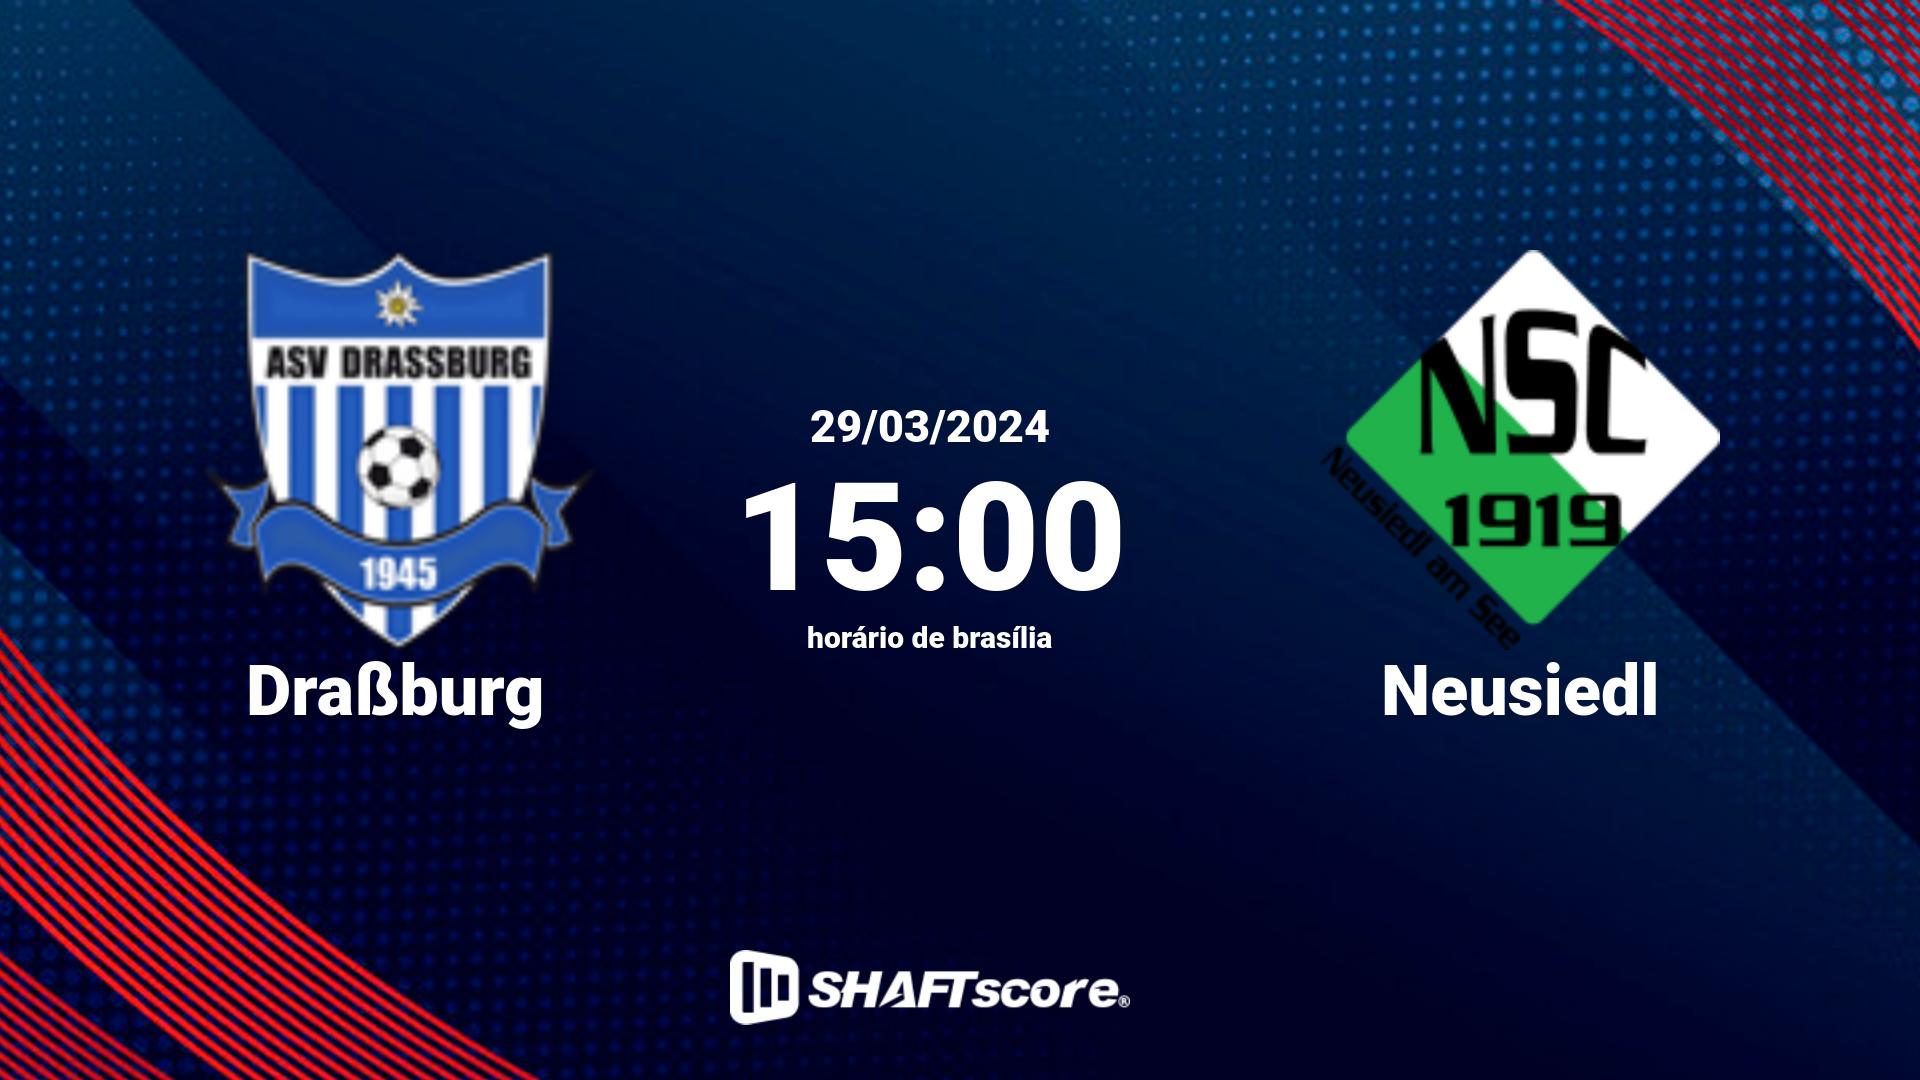 Estatísticas do jogo Draßburg vs Neusiedl 29.03 15:00